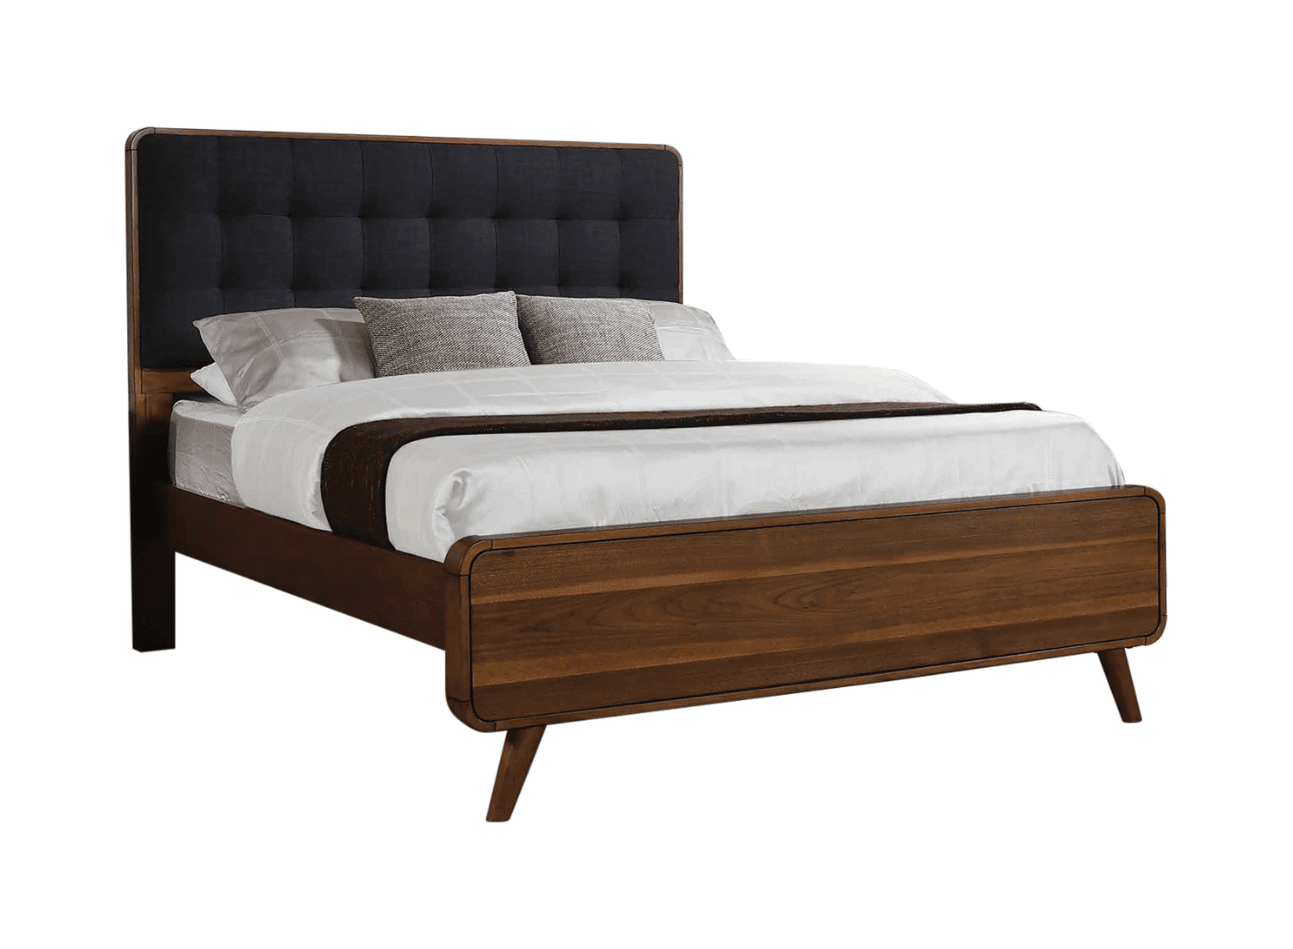 Milton Queen Bedroom Set With Upholstered Tufted Headboard - Dark Walnut